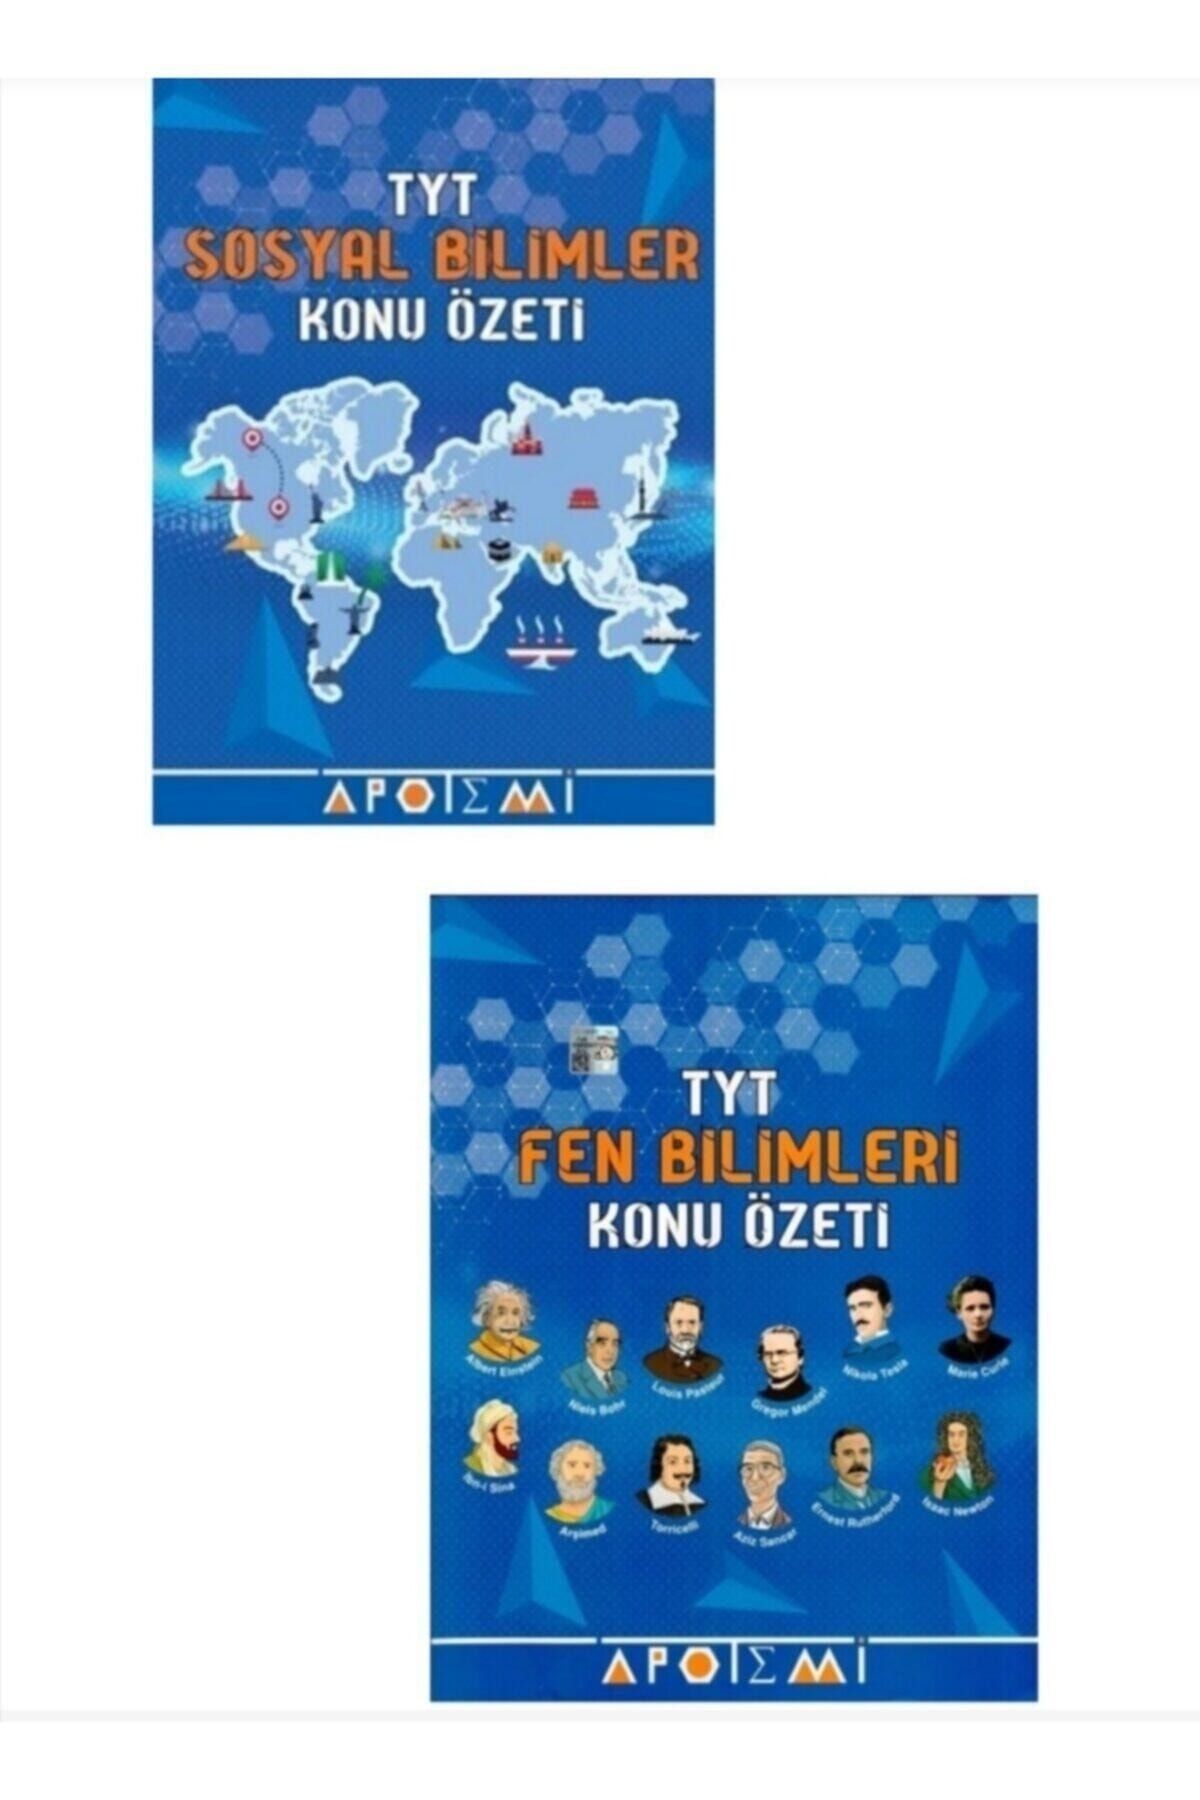 Apotemi Yayınları Apotemi Tyt Sosyal Konu Özeti Ve Tyt Fen Bilimleri Konu Özeti Seti